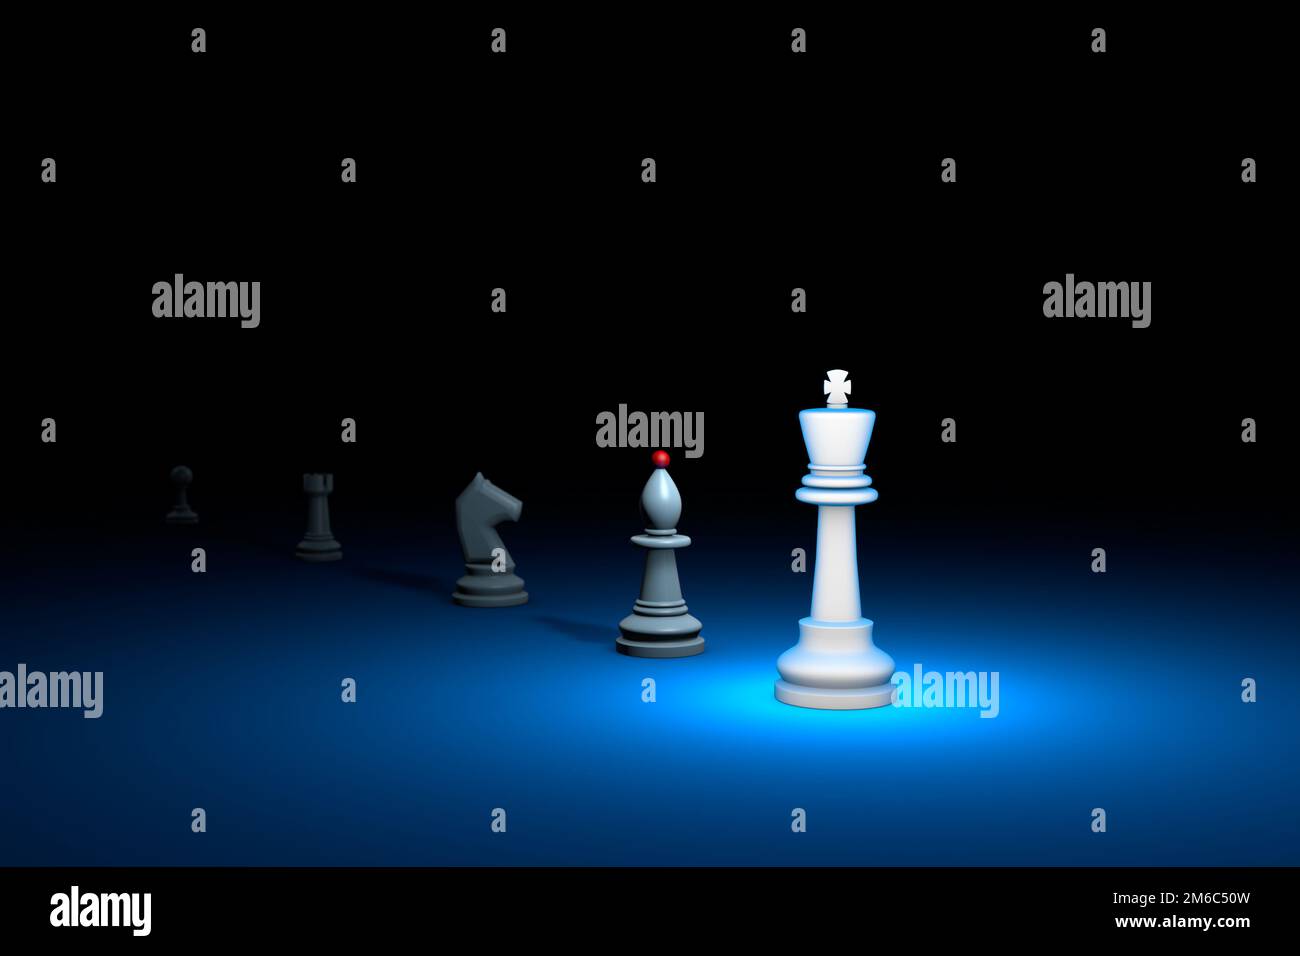 Gran autoridad (metáfora de ajedrez). Ilustración de renderizado 3D. Espacio libre para texto. Foto de stock